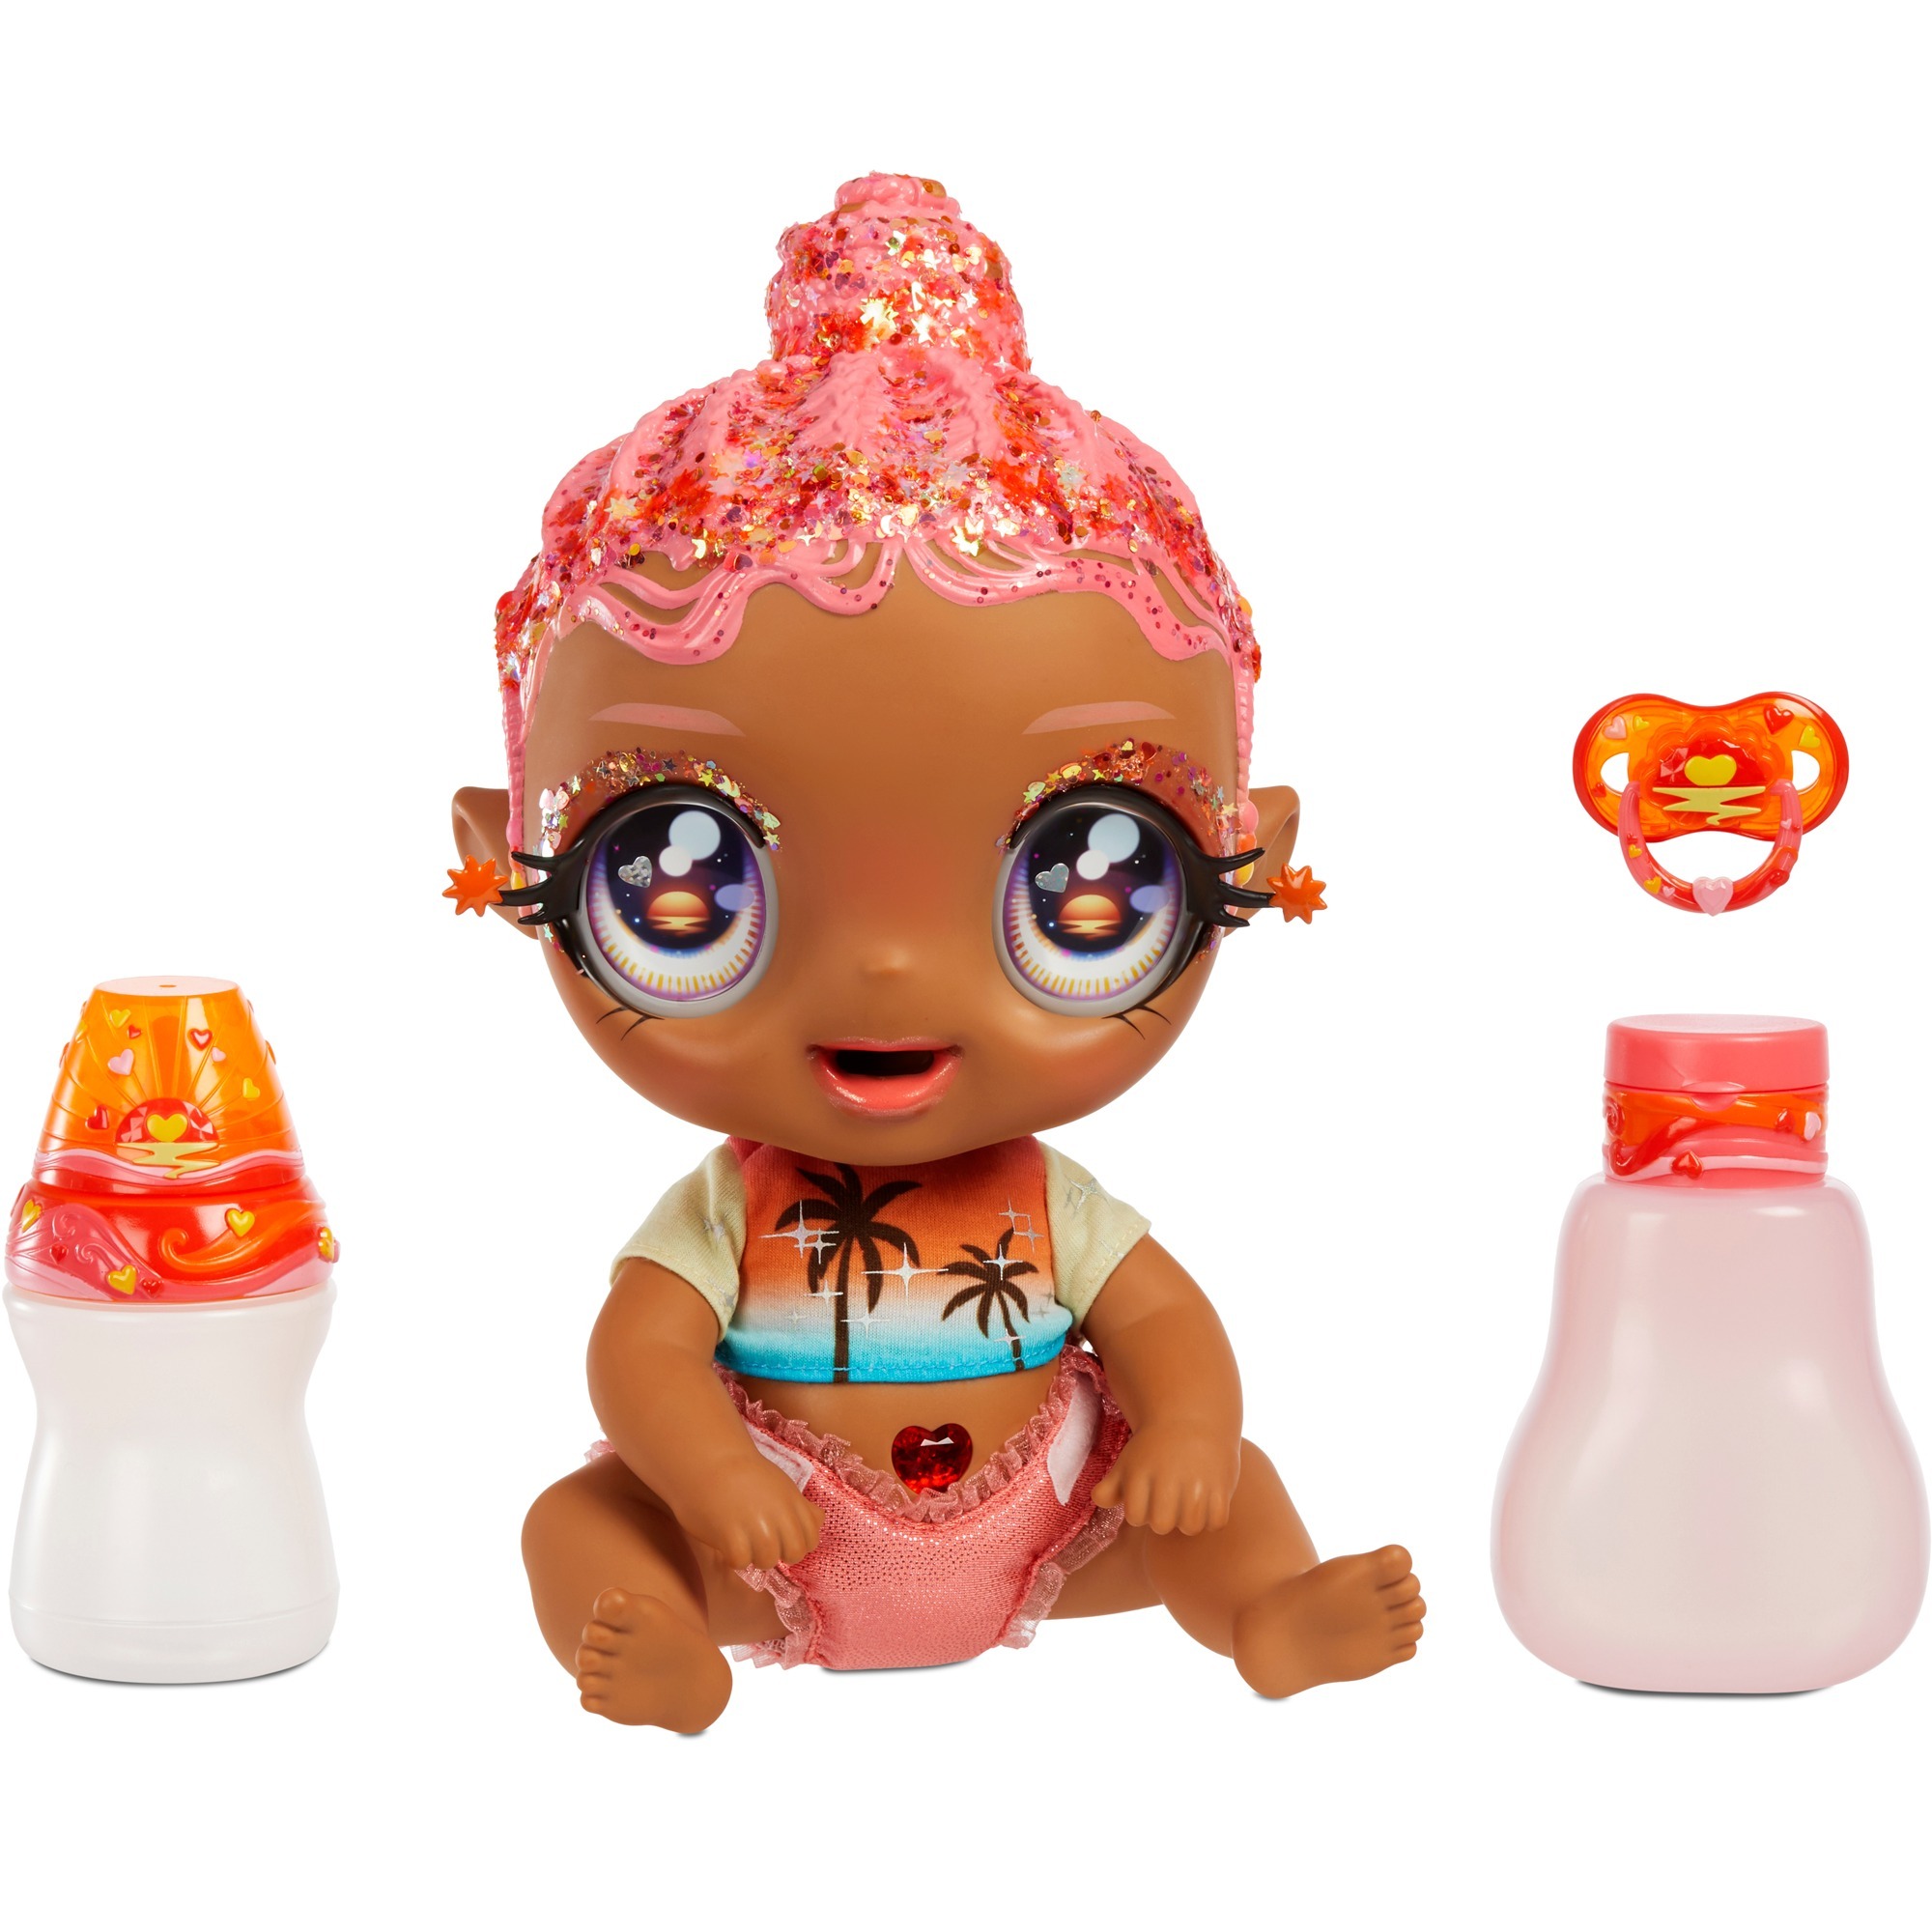 Image of Alternate - Glitter Babyz Doll - Coral Pink (Palm Trees), Puppe online einkaufen bei Alternate